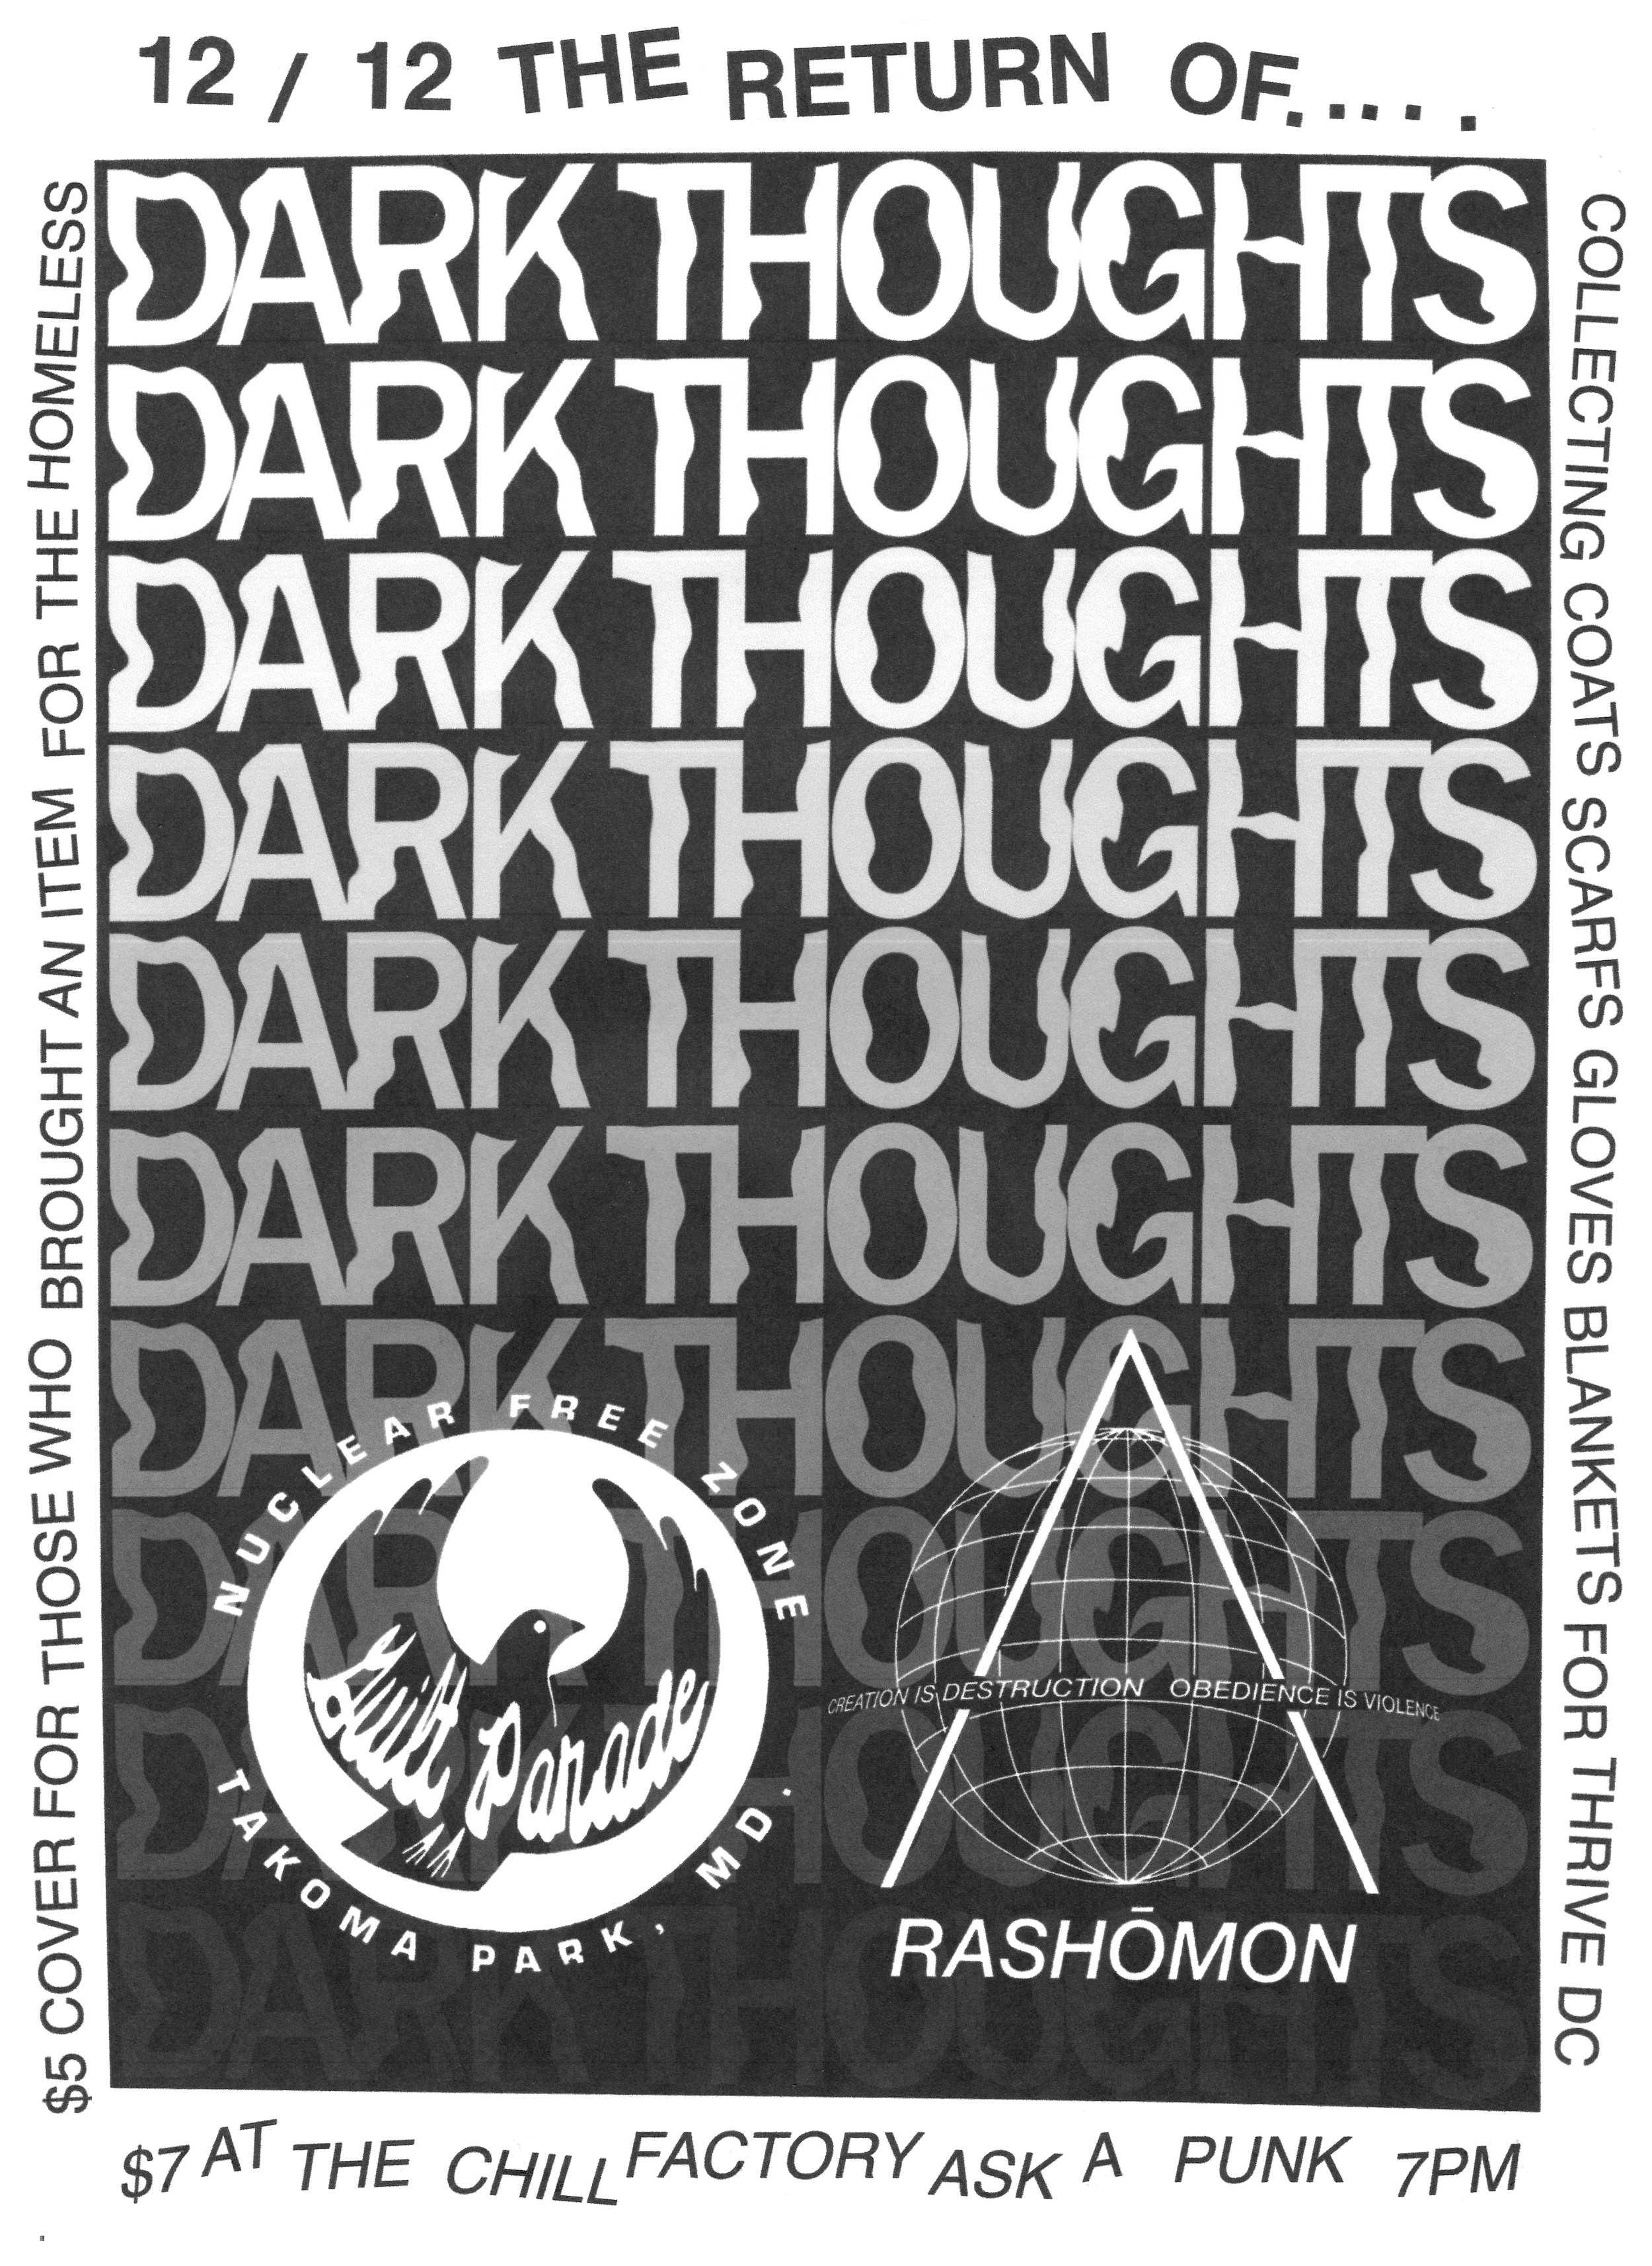 Dark_thoughts_3.jpg